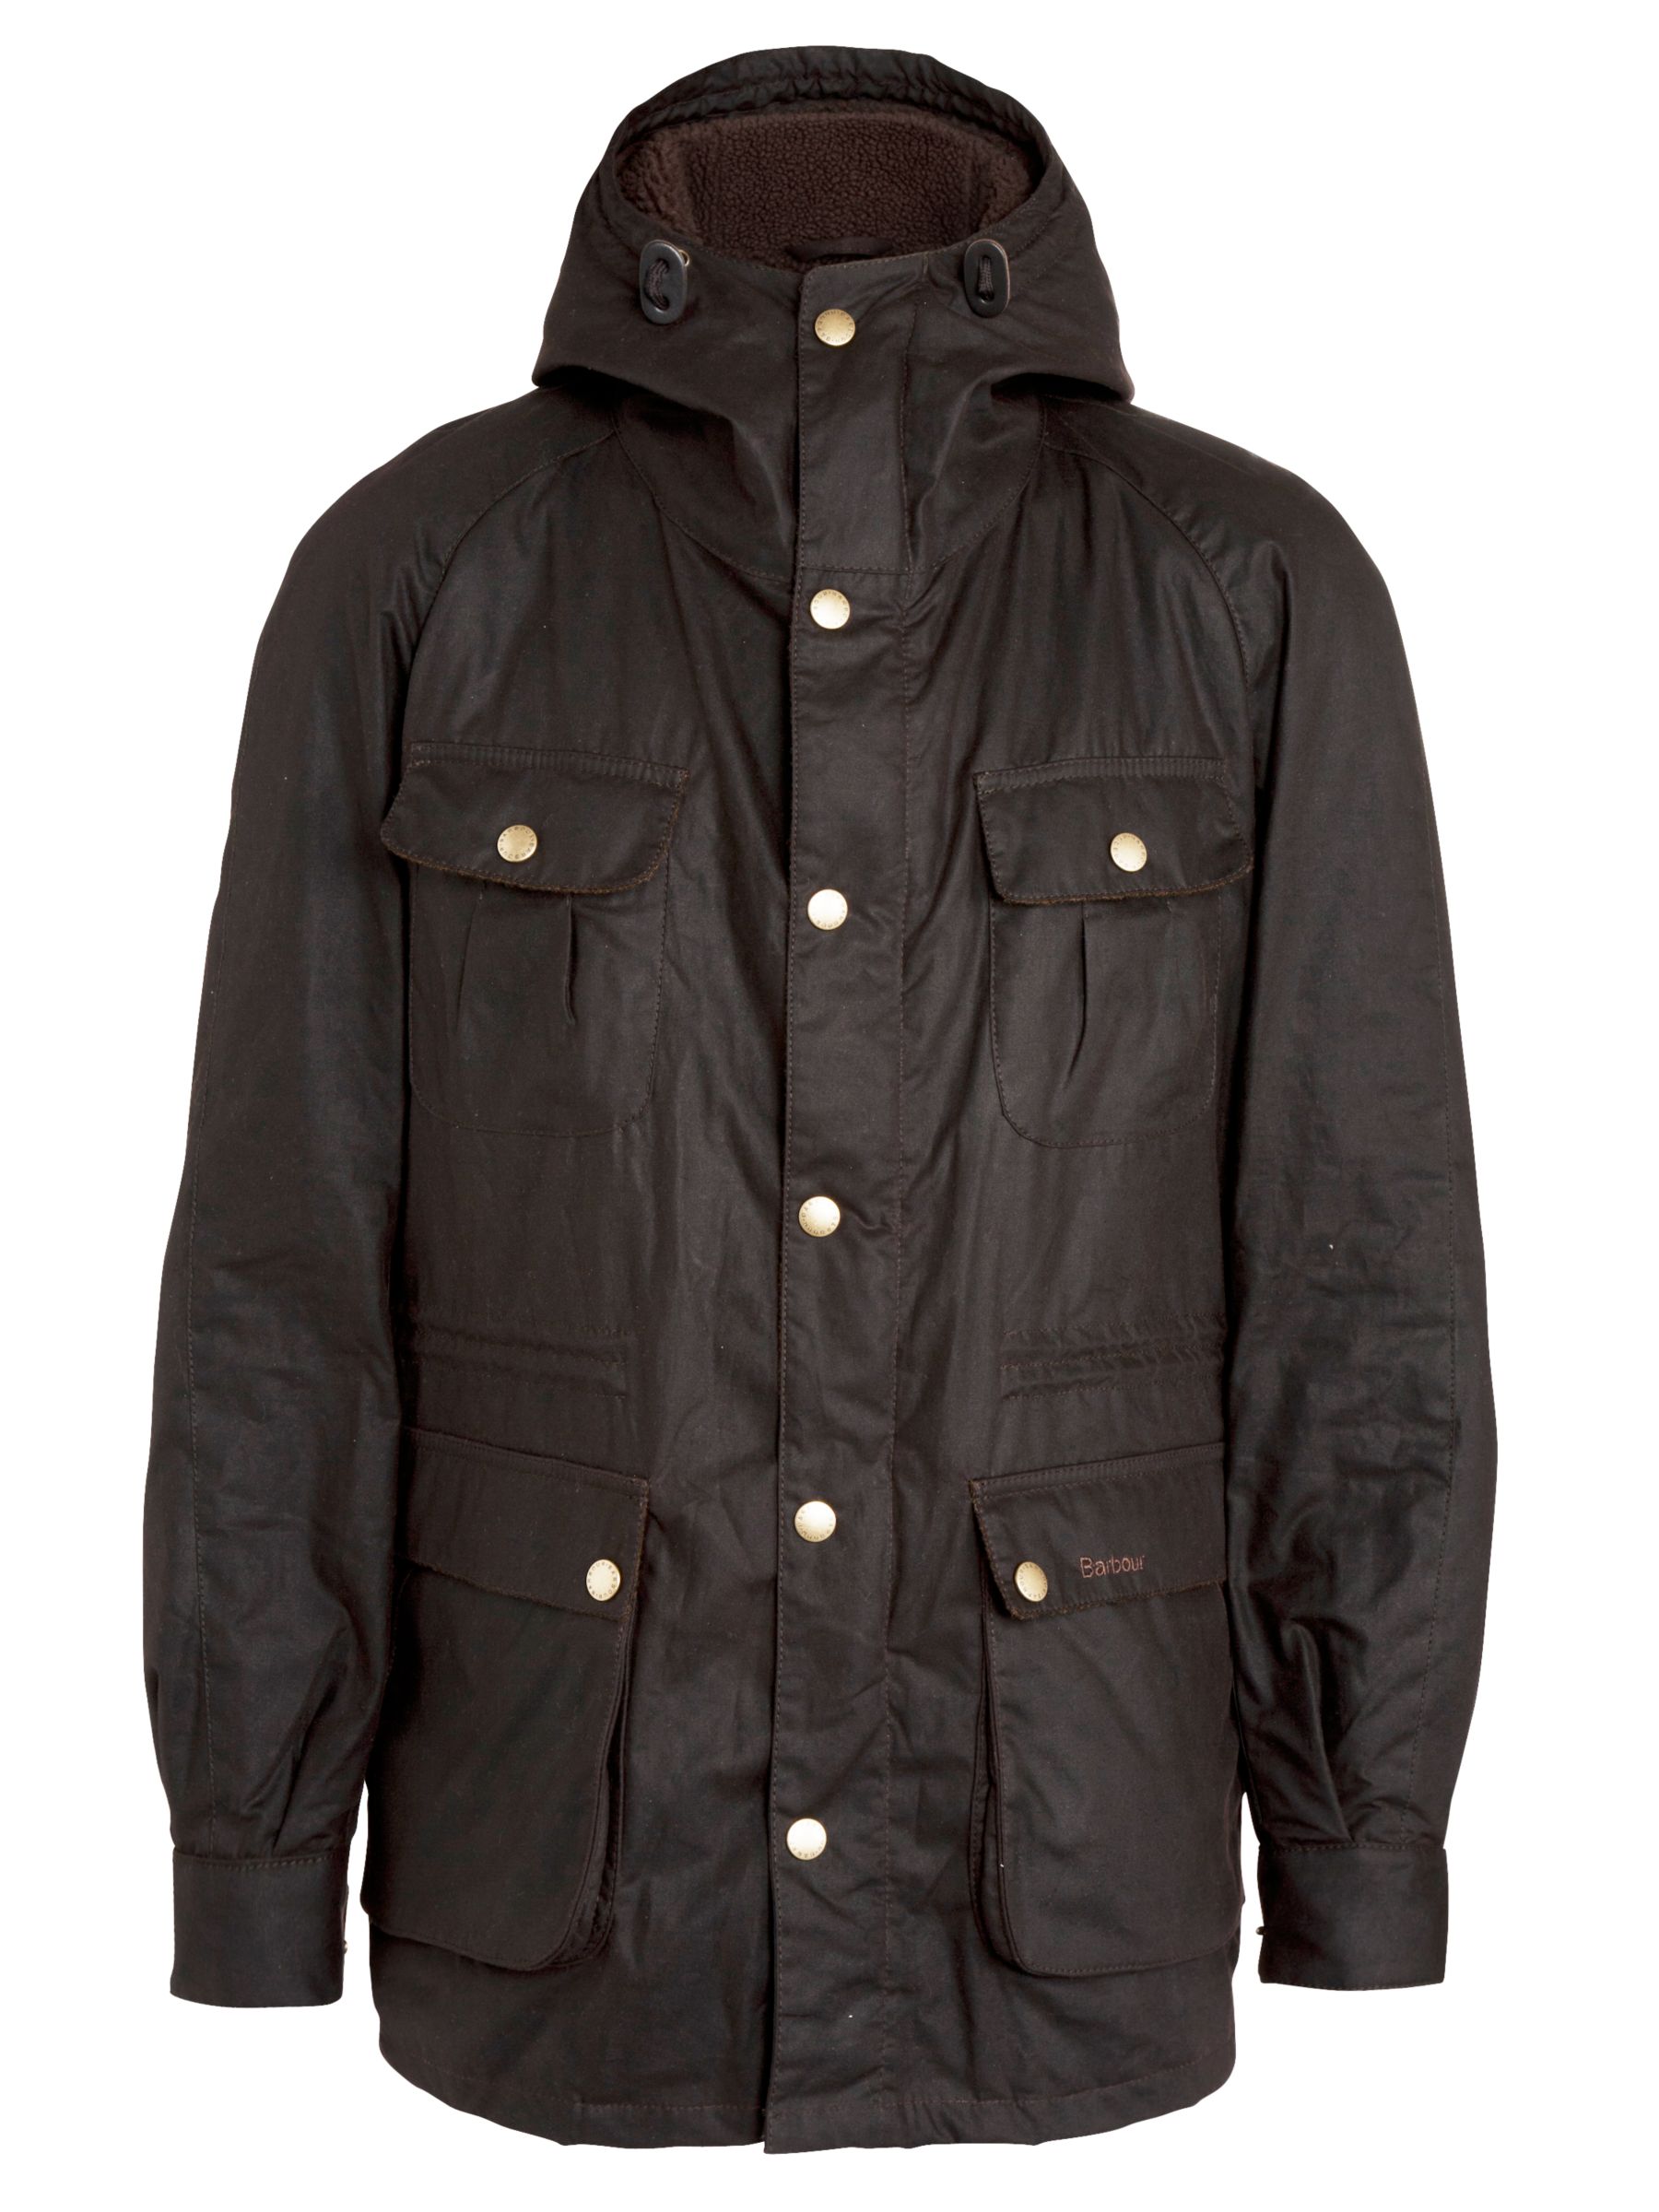 Barbour Northolt Hooded Parka Jacket, Rustic at John Lewis & Partners